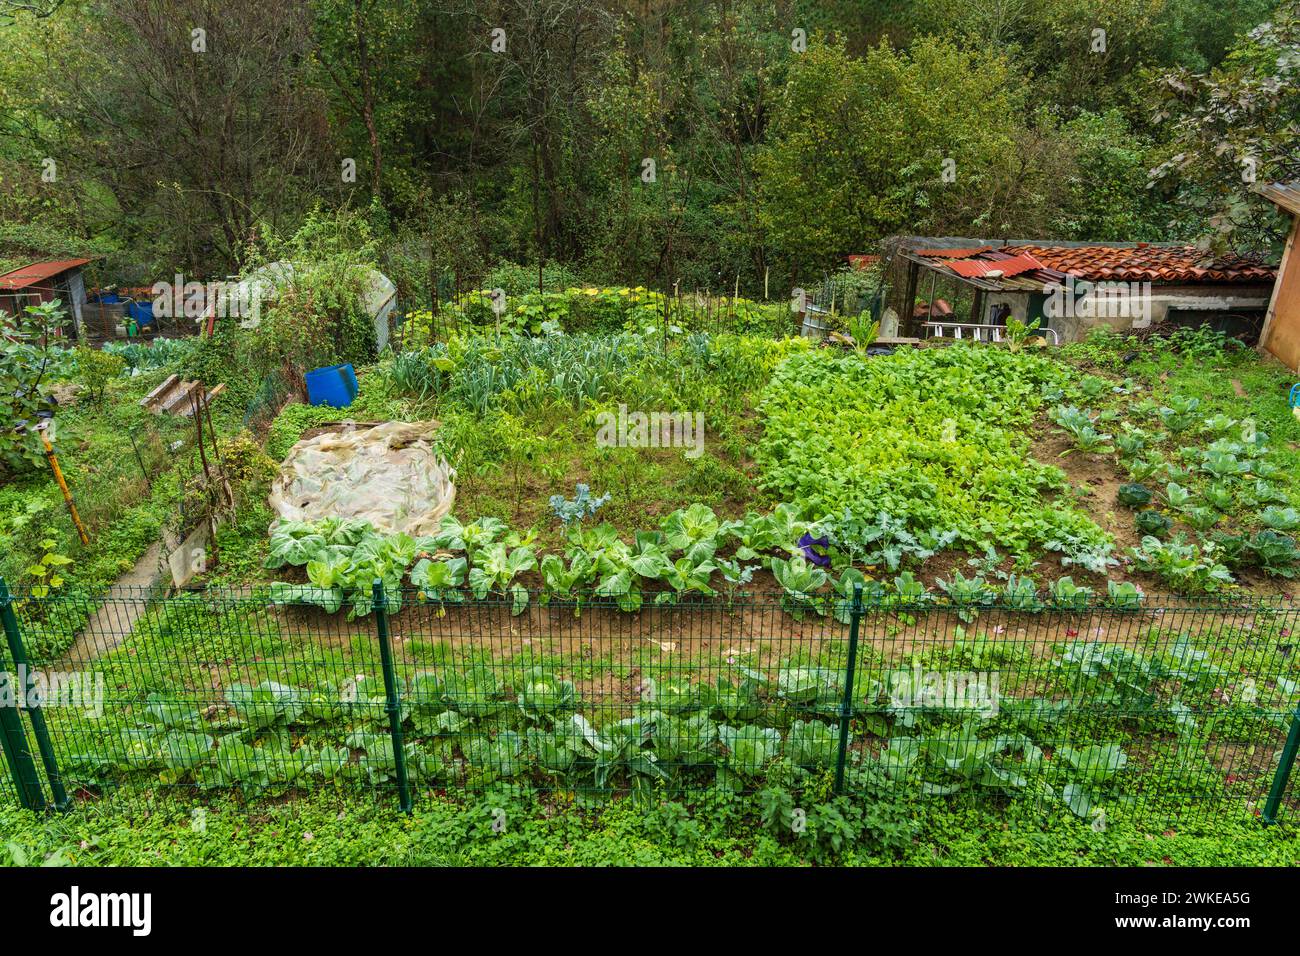 citizen garden, Segura, Idiazabal, Gipuzkoa, Basque country, Spain. Stock Photo